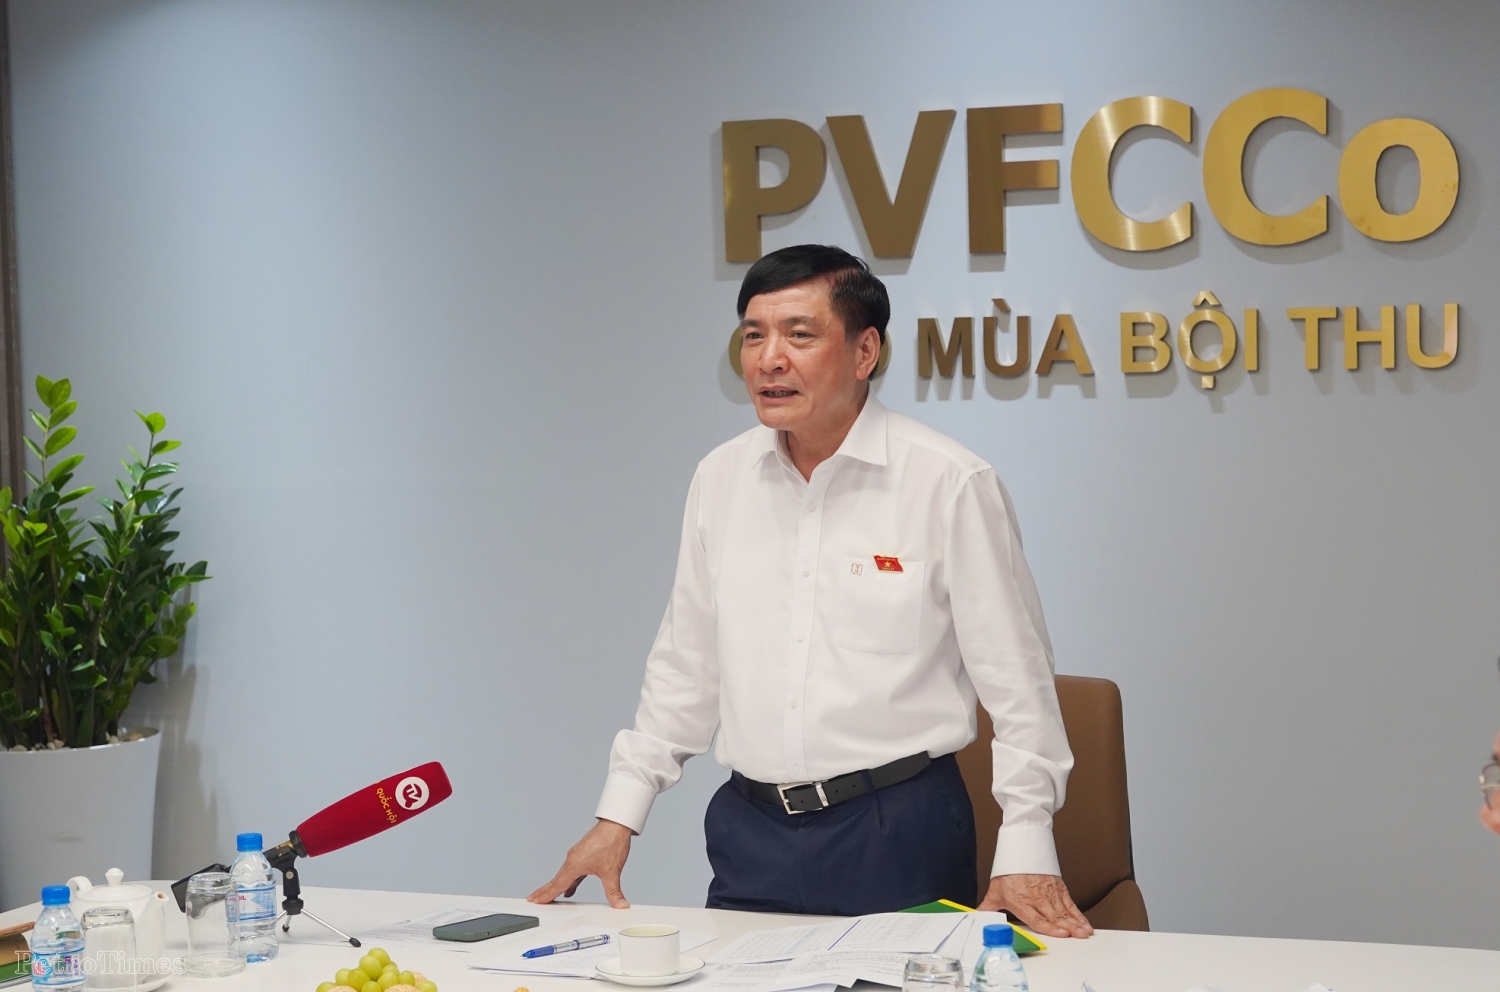 Tổng Thư ký Quốc hội, Chủ nhiệm VPQH Bùi Văn Cường thăm và làm việc với PVFCCo